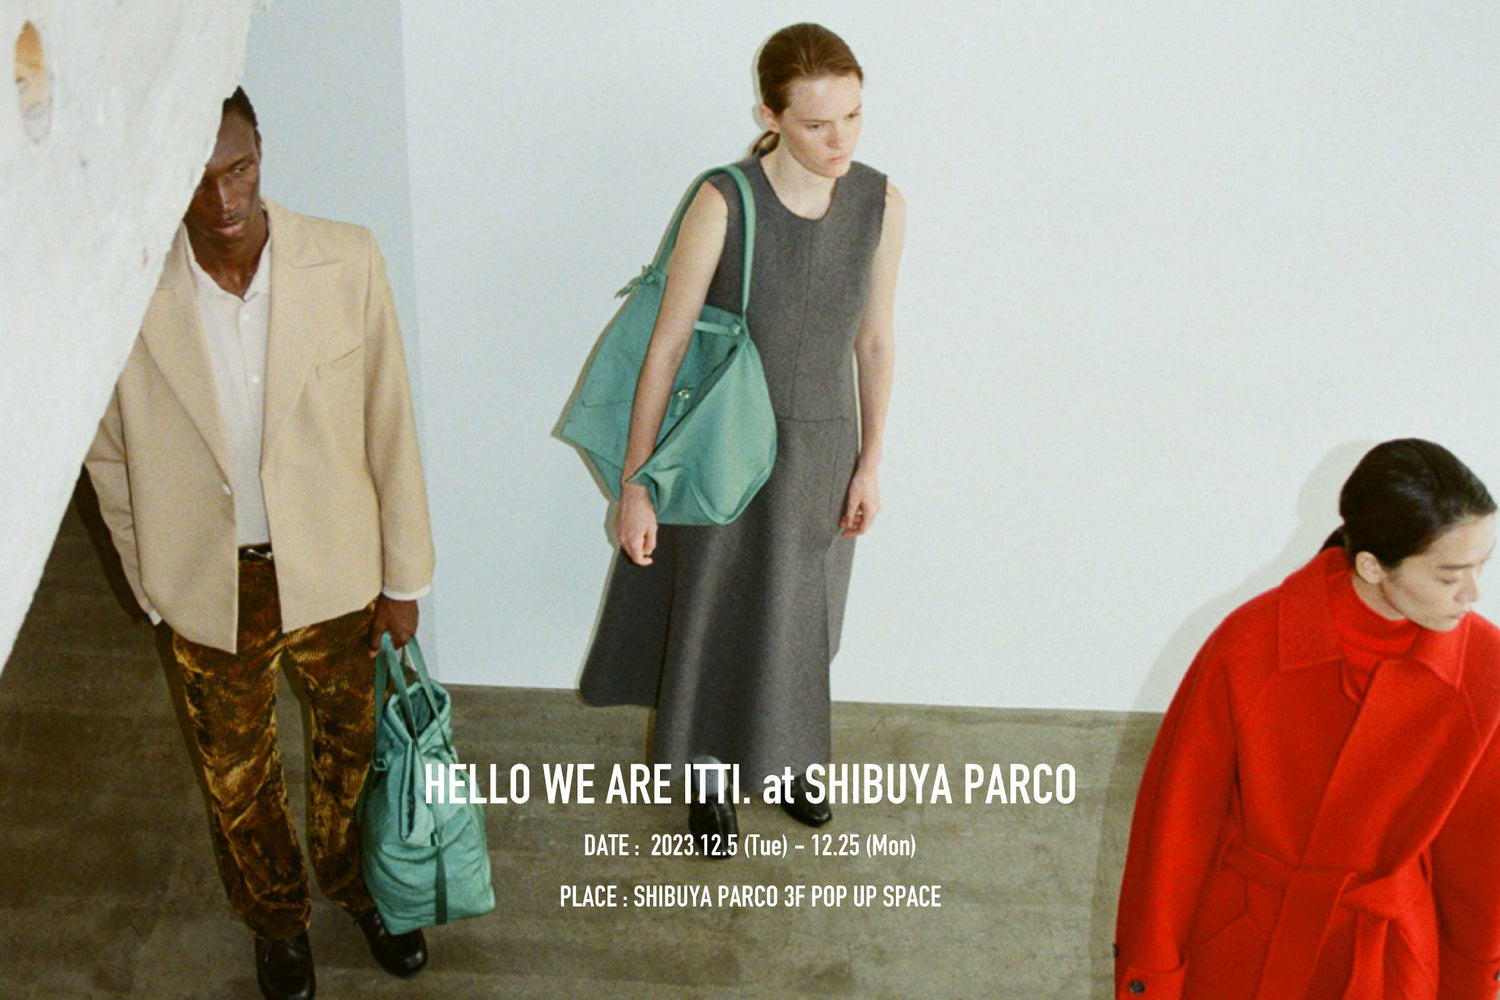 HELLO WE ARE ITTI at SHIBUYA PARCO (渋谷PARCOにてポップアップショップ開催) | NEWS (お知らせ) -  ITTI (イッチ) 催事 期間限定 革小物 ギフト レザー 財布 バッグ グッズ ファッション